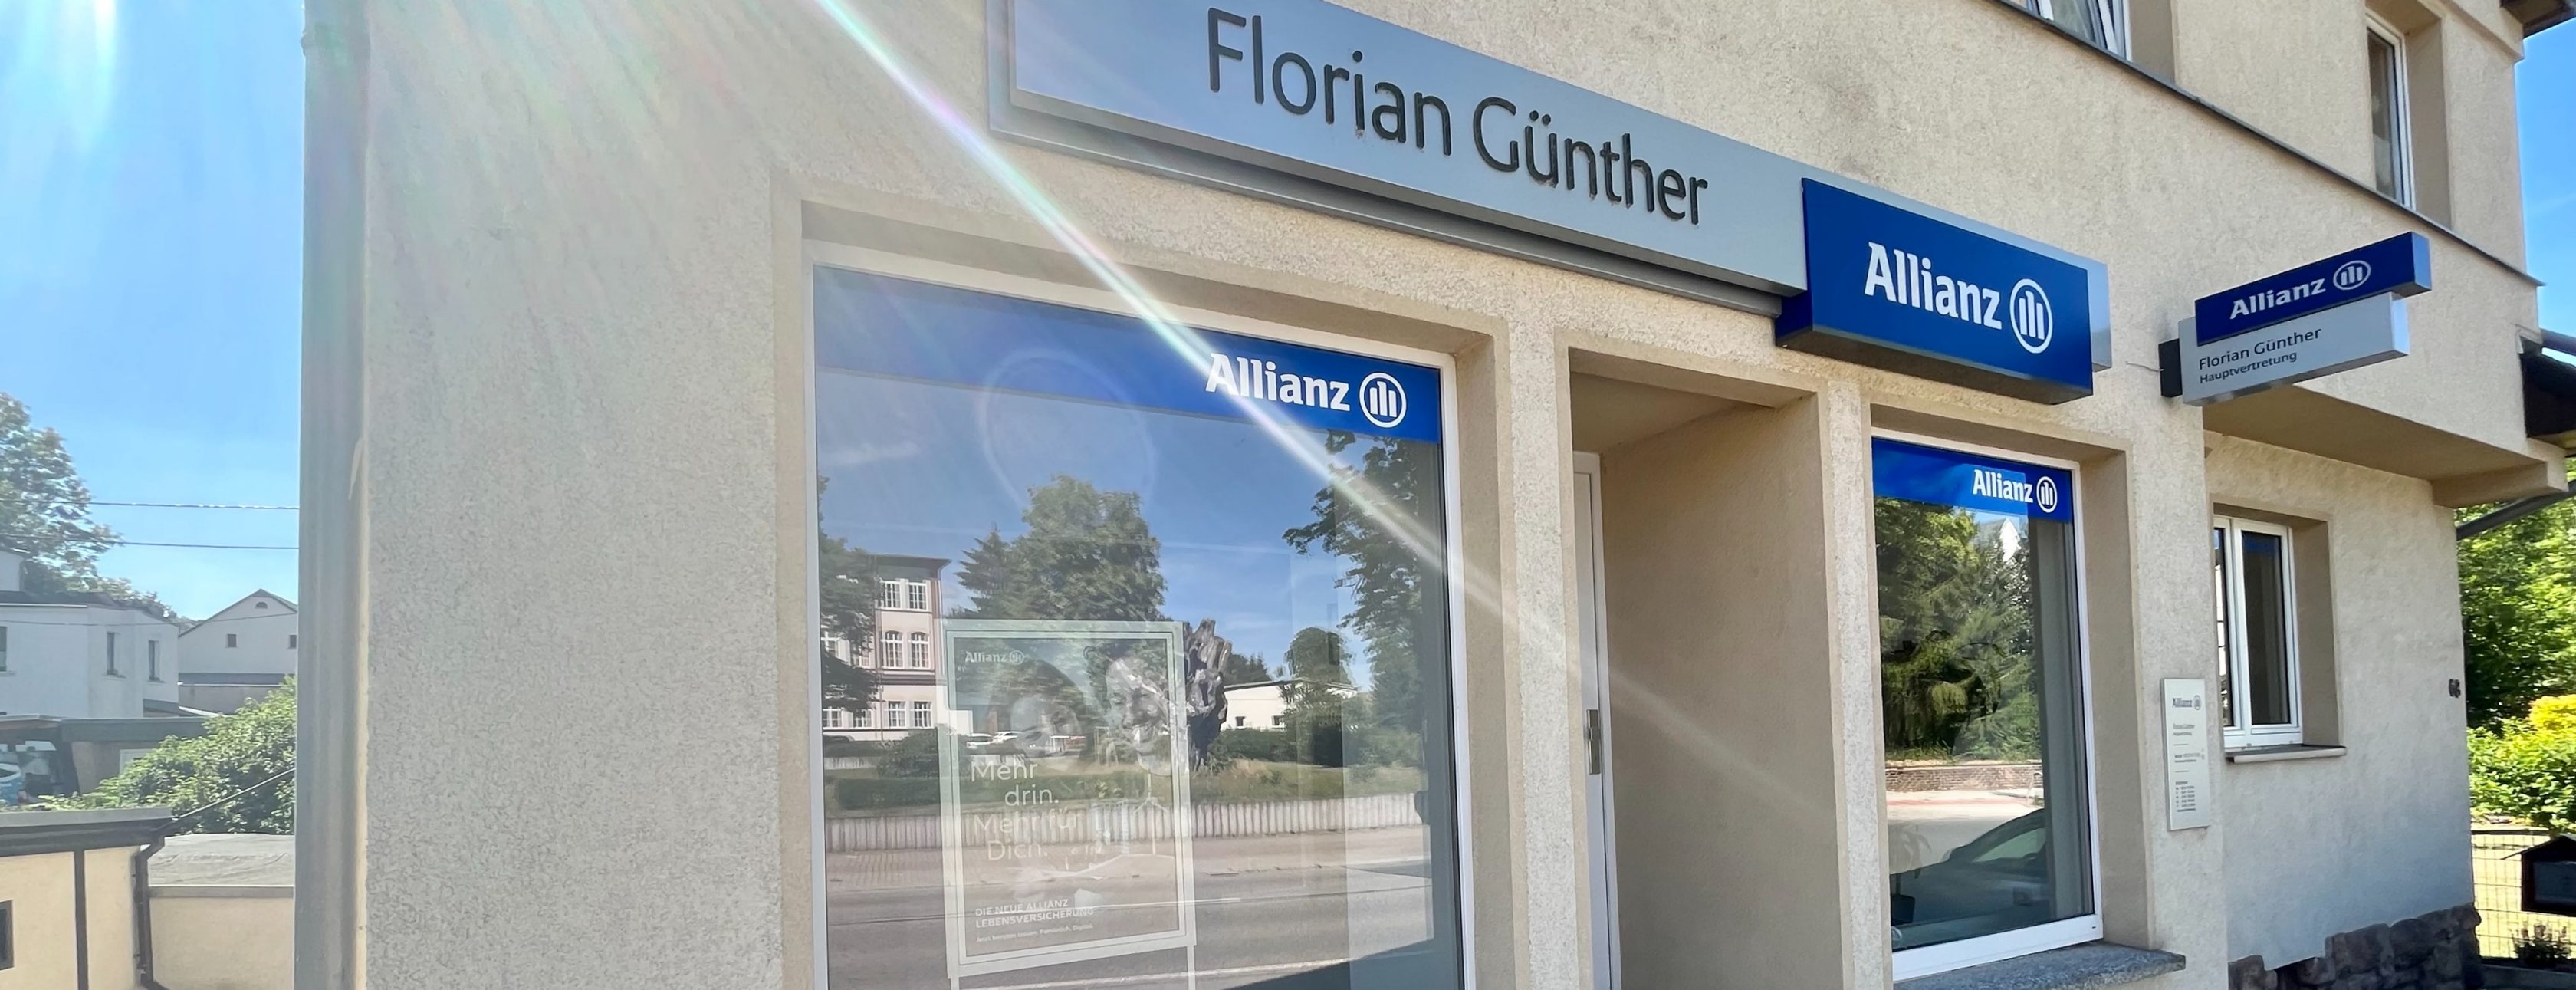 Allianz Versicherung Florian Günther Oberlungwitz - Agentur Florian Günther